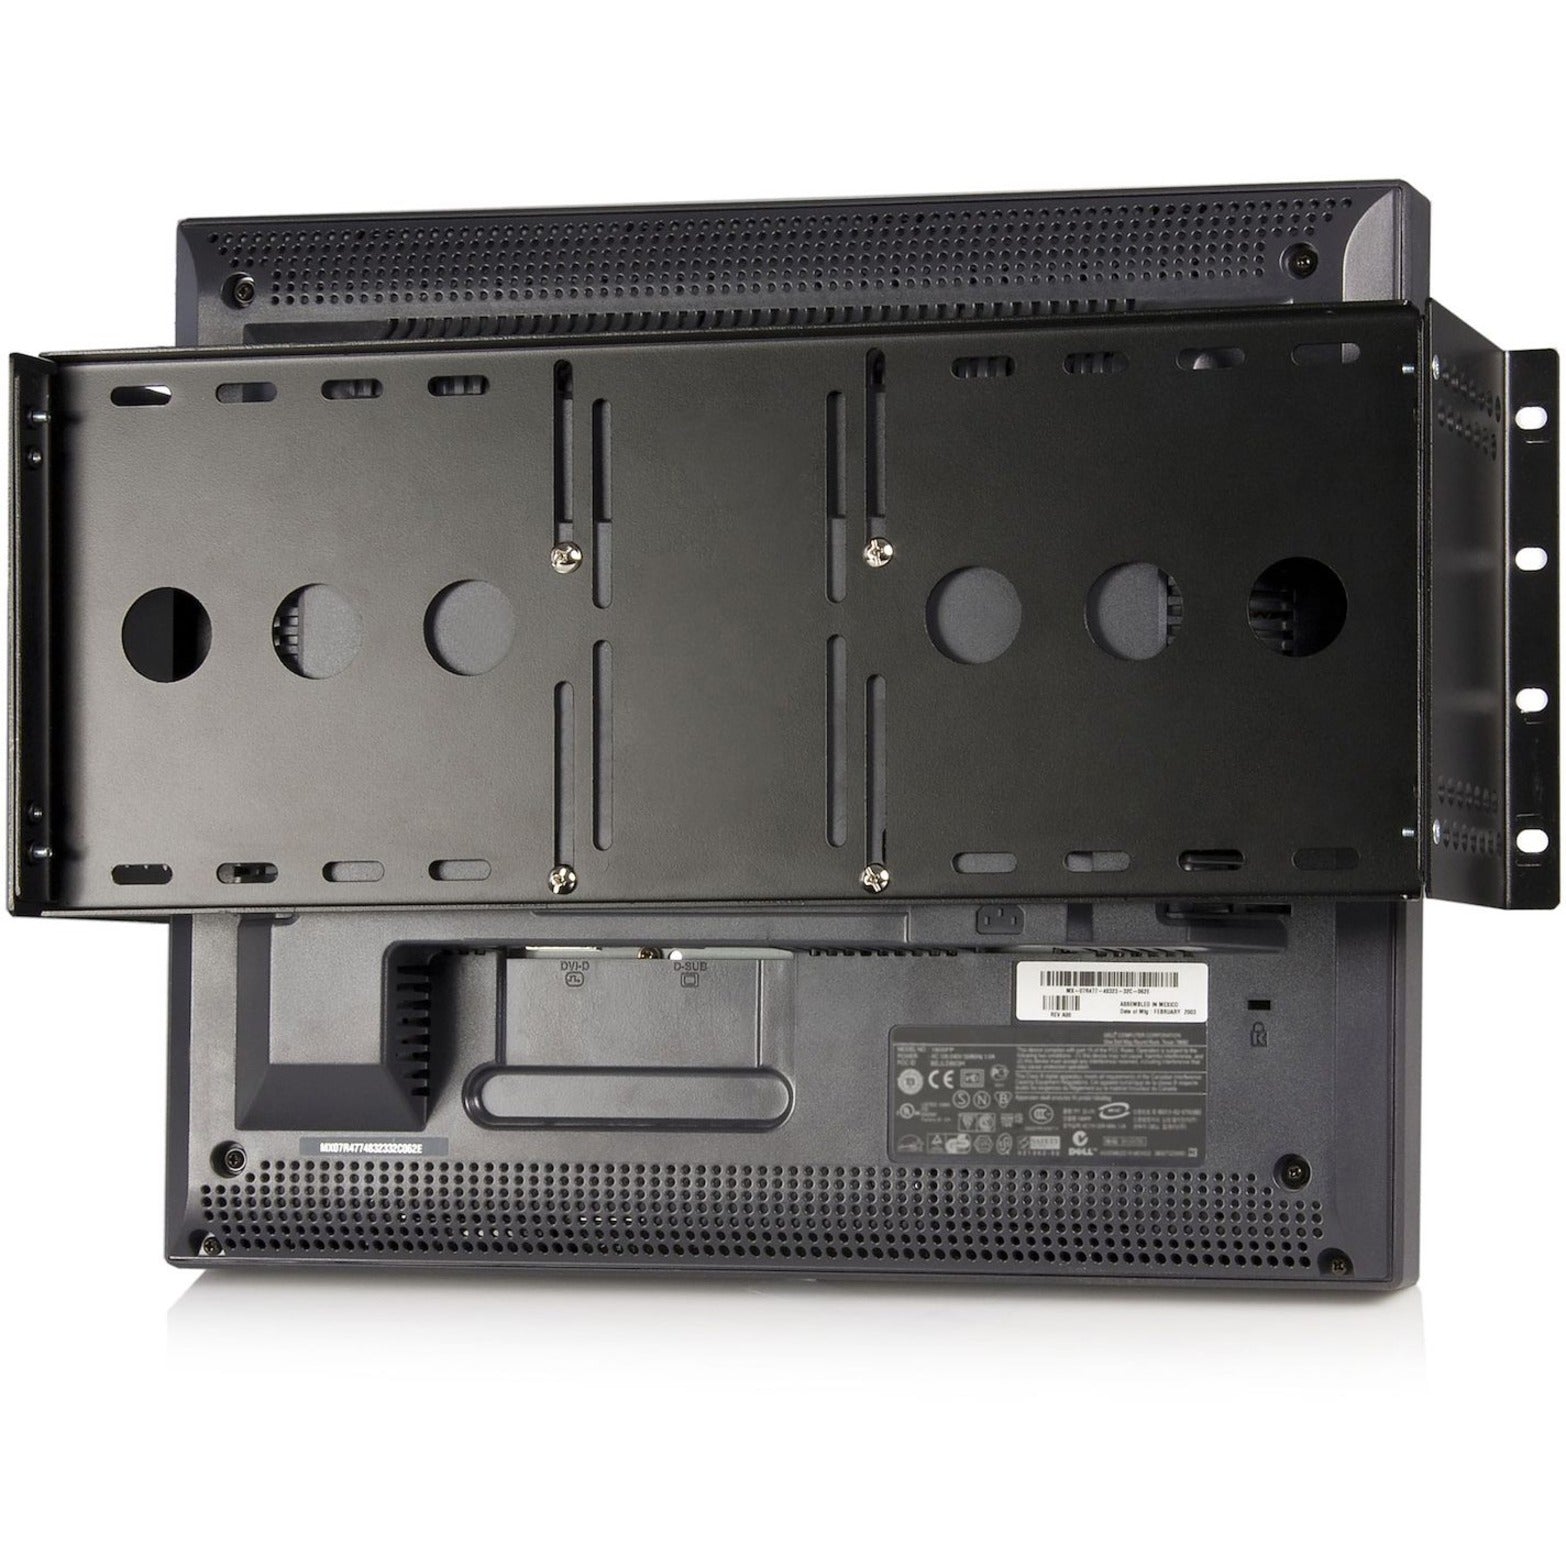 Soporte de montaje universal para monitor LCD VESA StarTech.com RKLCDBK para rack o gabinete de 19 pulgadas solución duradera y versátil.